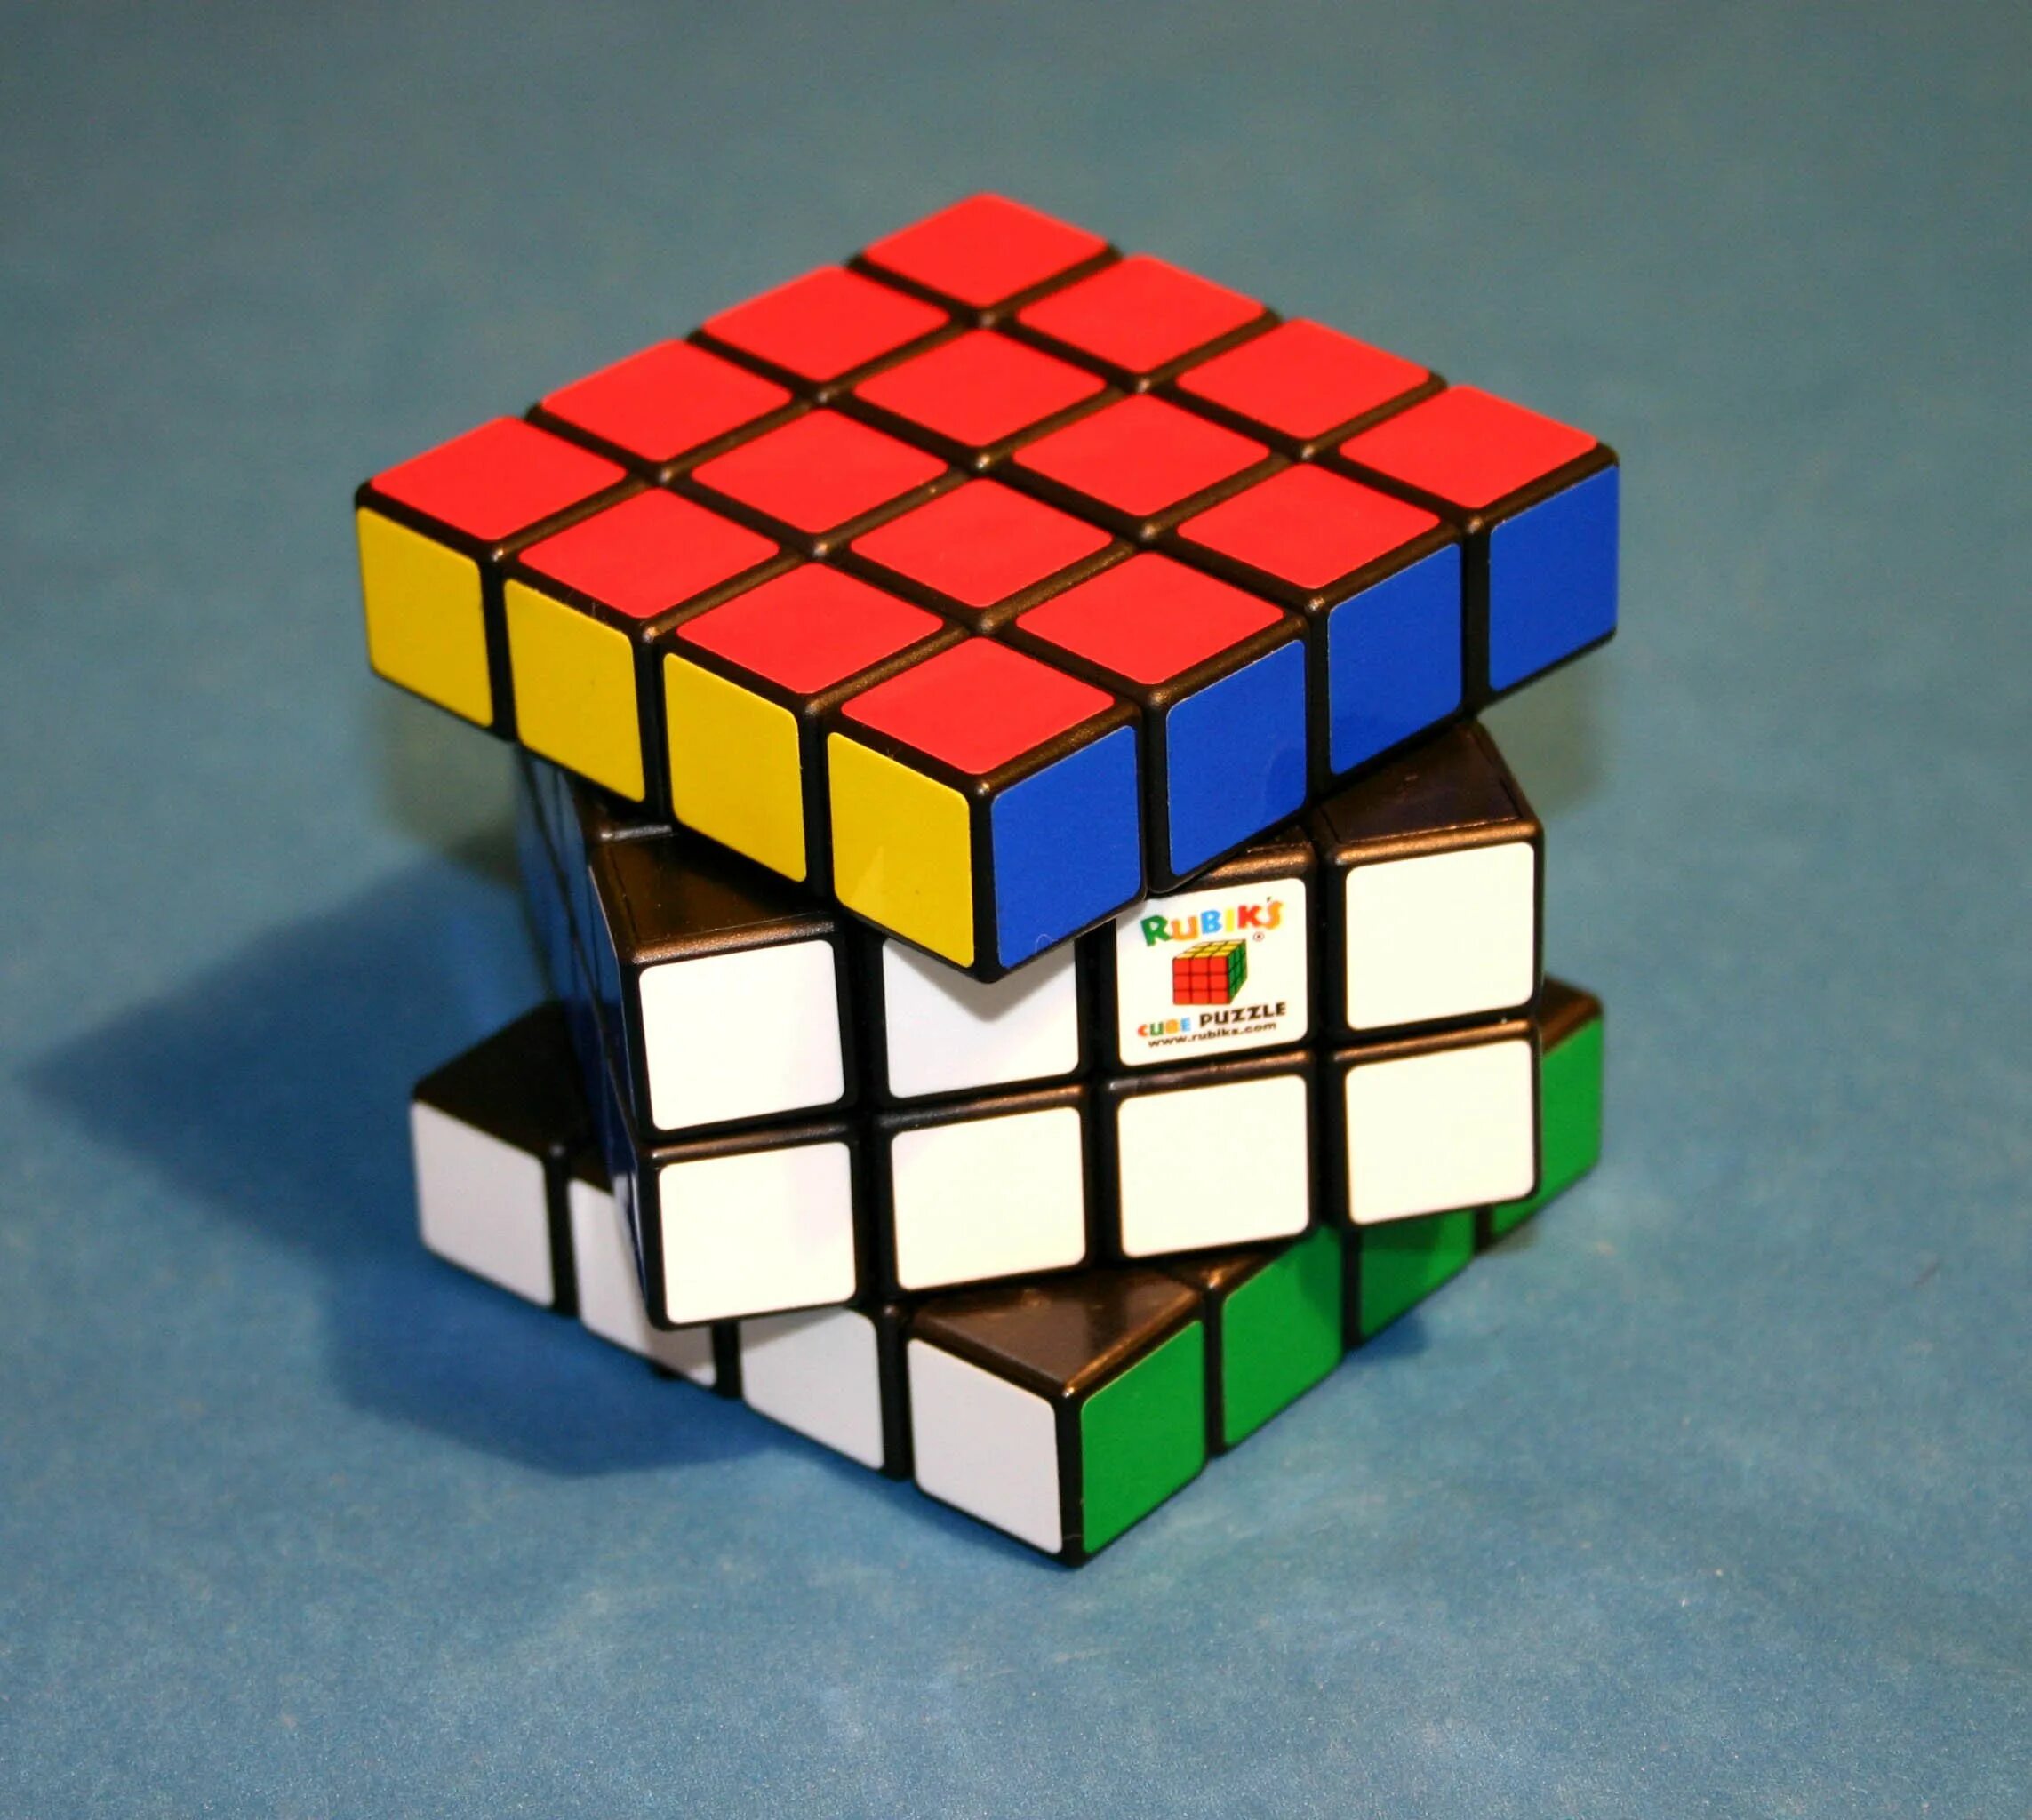 Рубик 4 4. Кубик рубик. Кубир рубик. Кубик 4 на 4 паритеты. Кубик Рубика сонкой бойс 4на4.